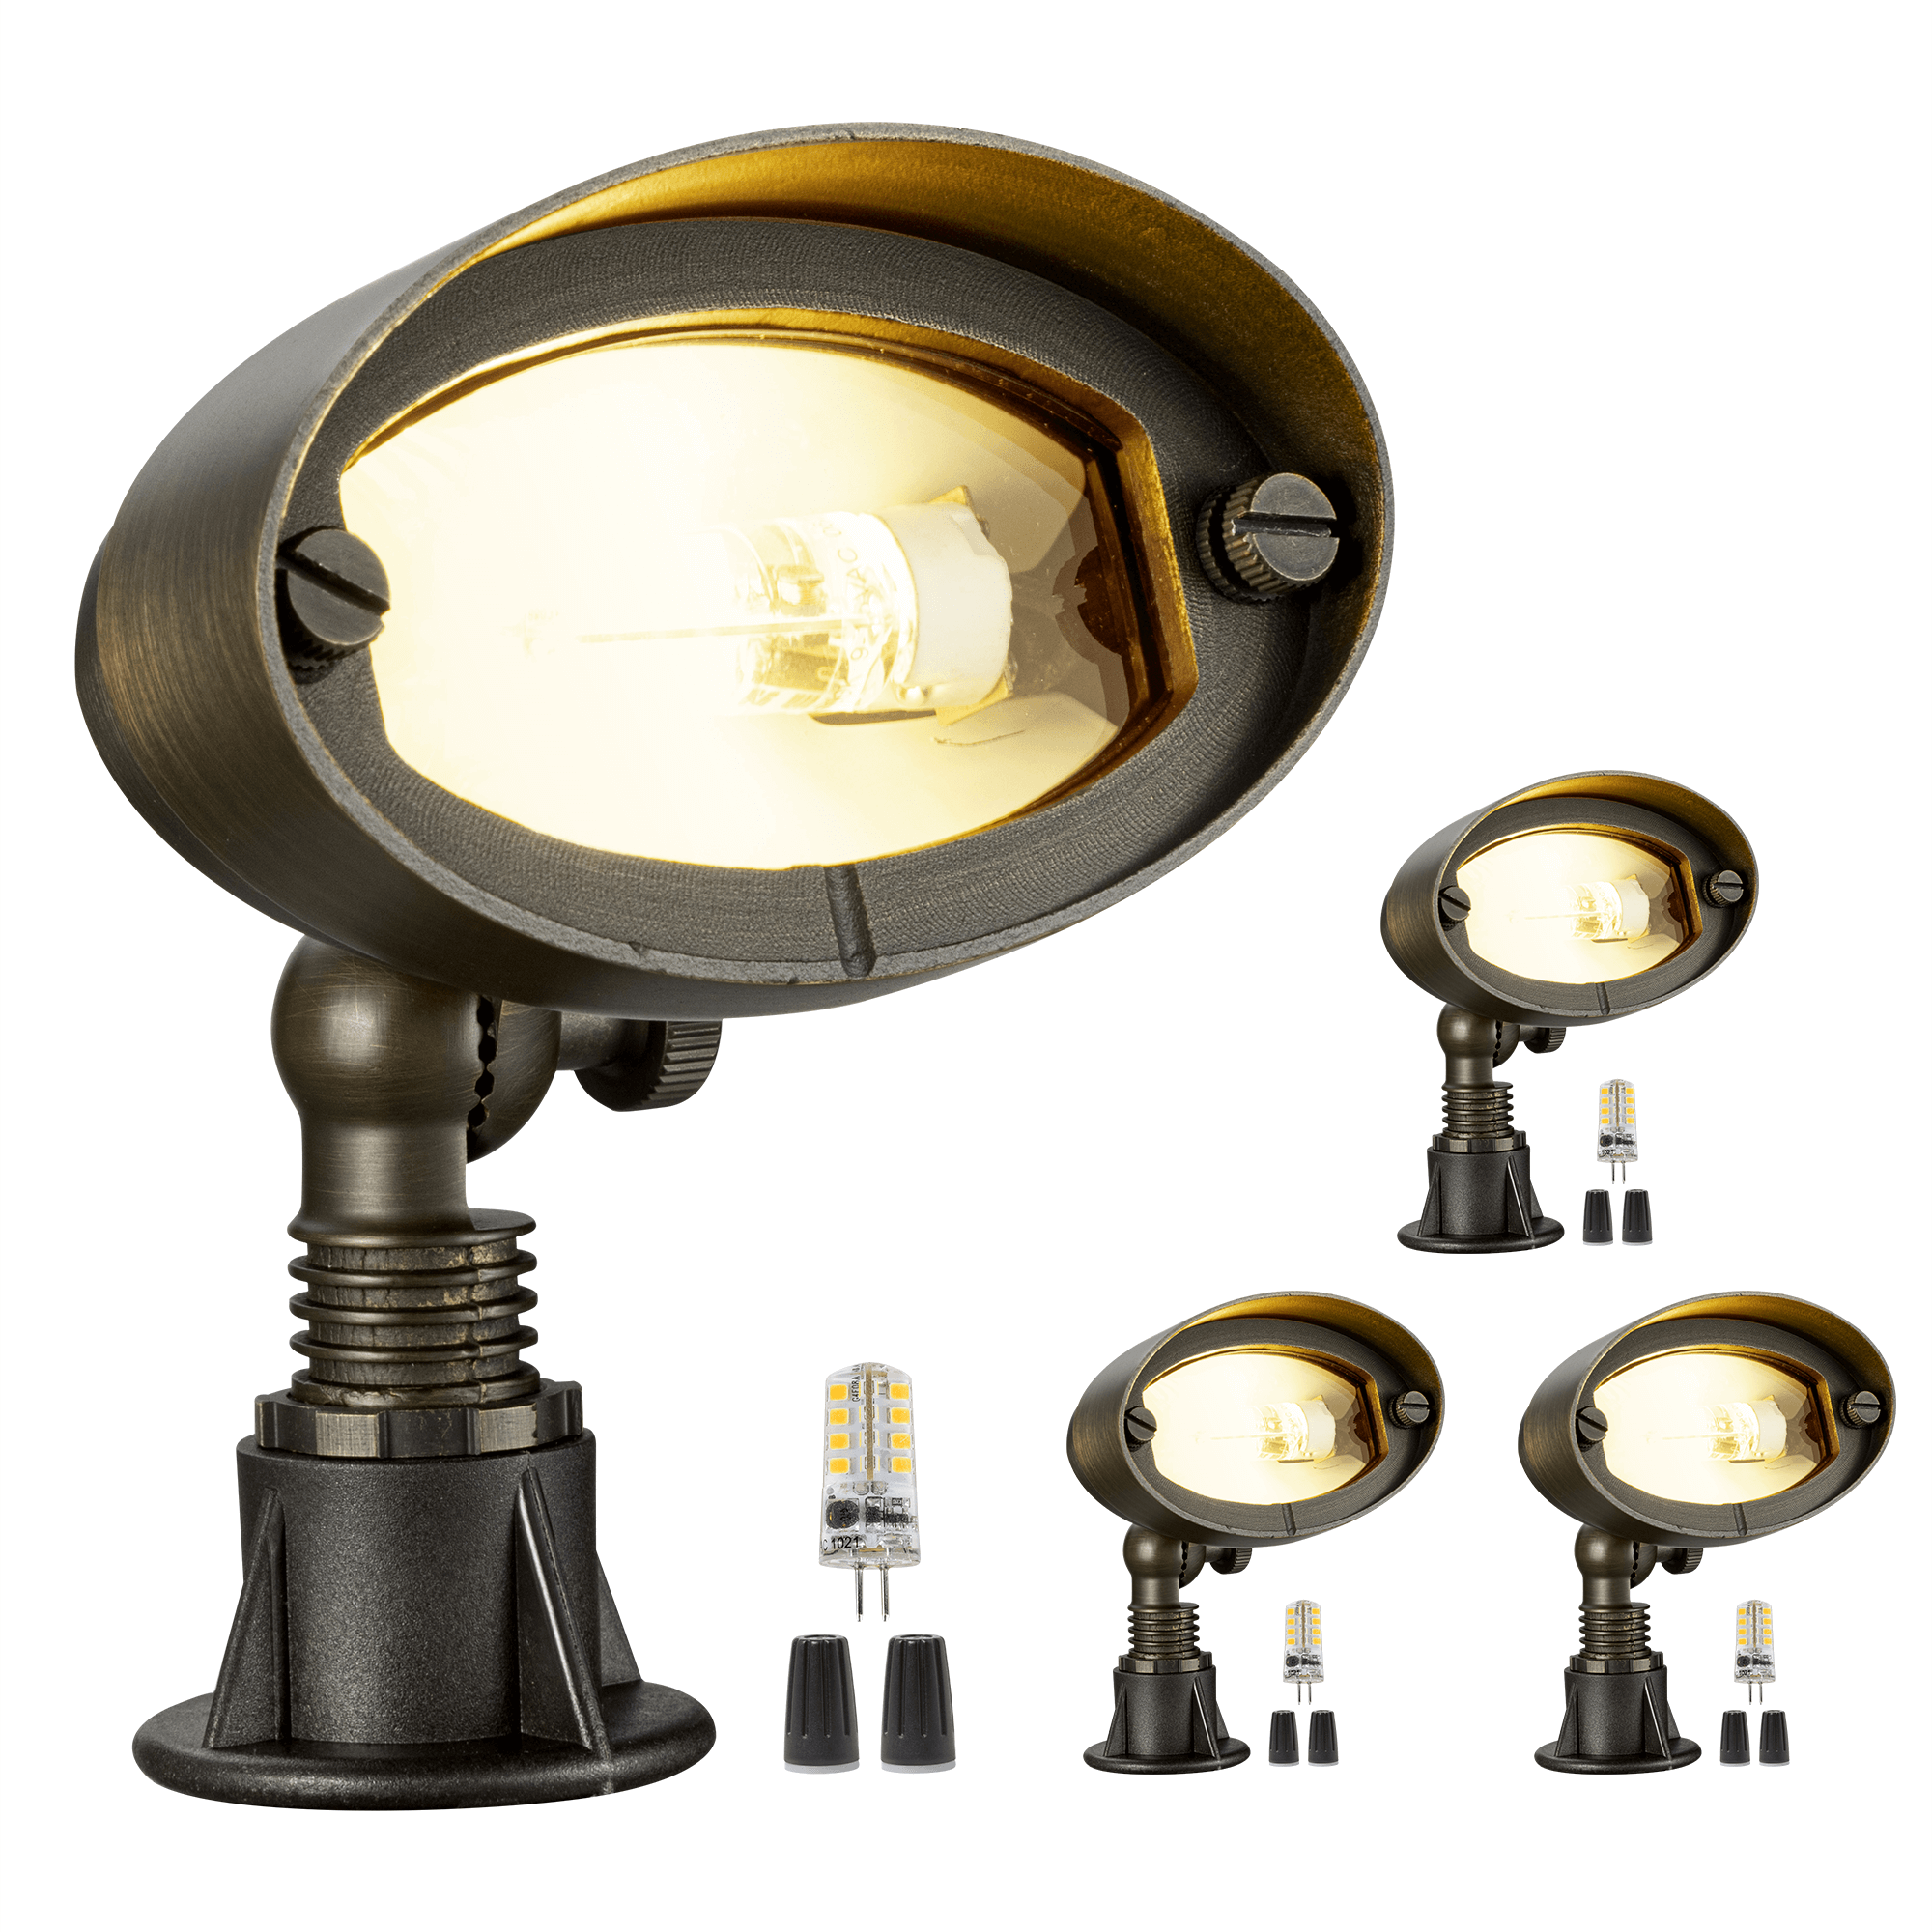 Lightkiwi H9917 Splendid Flood Light & Wall Wash for Landscape Lighting, Brass (Light Bulb Not Included)